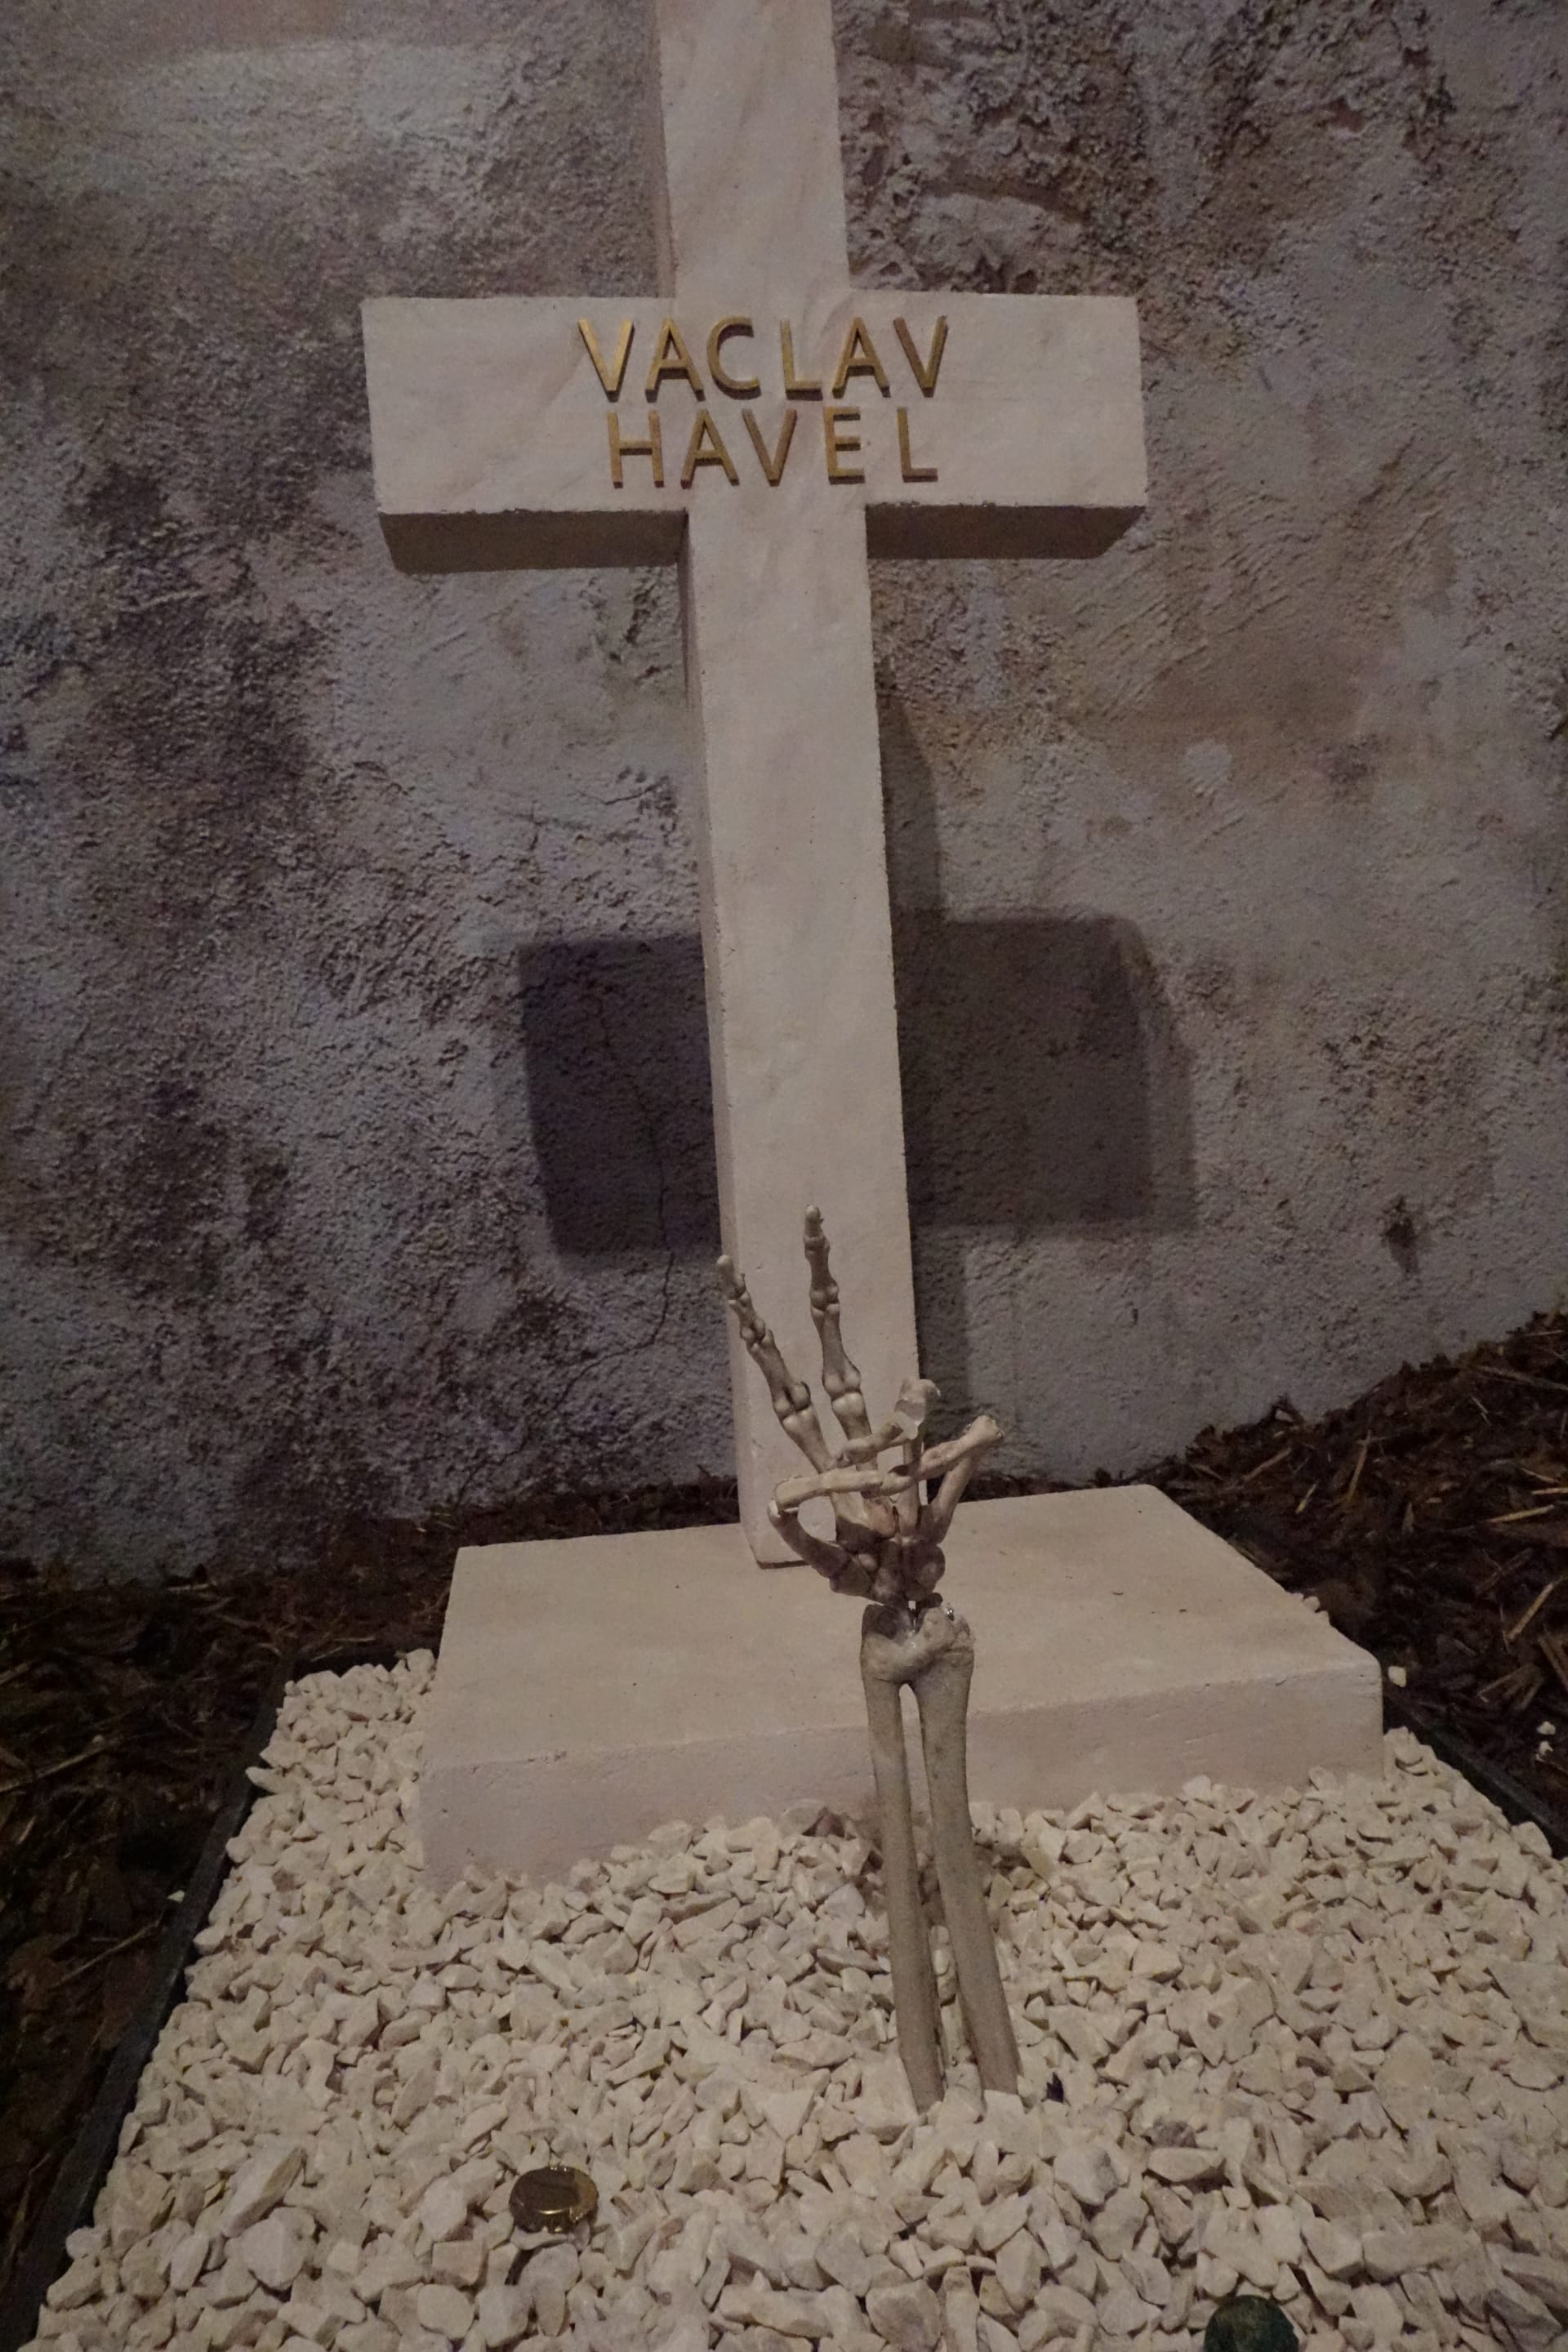 Hrob prvního prezidenta po Sametové revoluci Václava Havla vypadá zcela standardně, jako by byl na běžném hřbitově. Z něj se však tyčí do vzduchu ruka kostlivce, která návštěvníkům ukazuje Havlovo typické gesto.